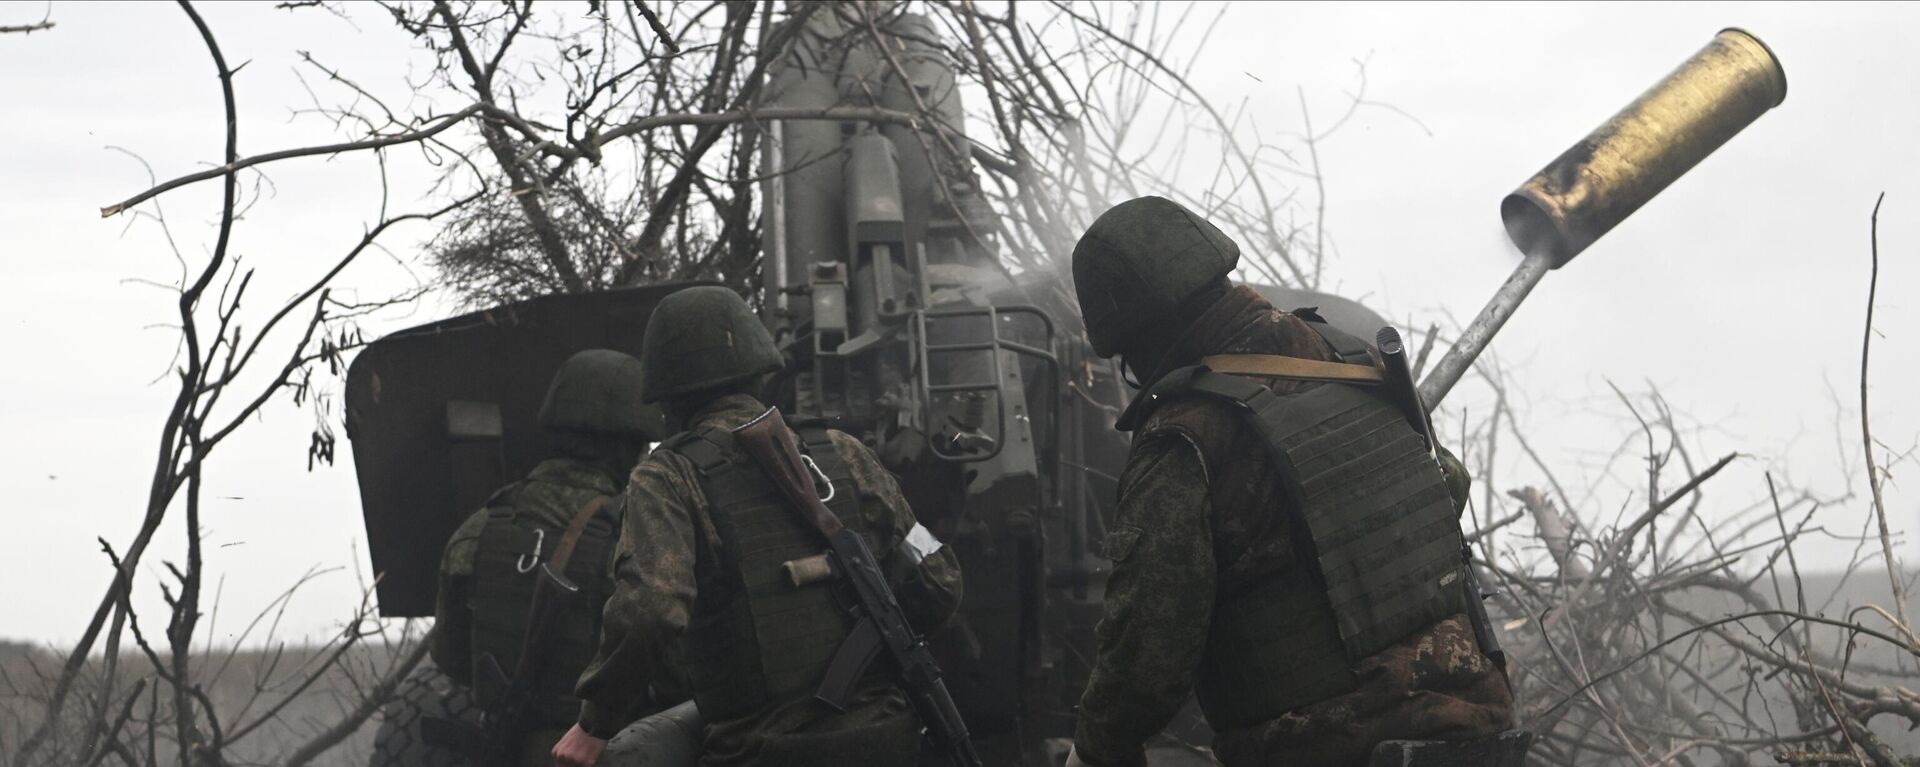 مدفعية القوات المسلحة الروسية تطلق النار على مواقع القوات المسلحة الأوكرانية من مدفع هاوتزر مستا-بي في المنطقة الجنوبية من منطقة العملية العسكرية الخاصة في أوكرانيا - سبوتنيك عربي, 1920, 10.06.2023